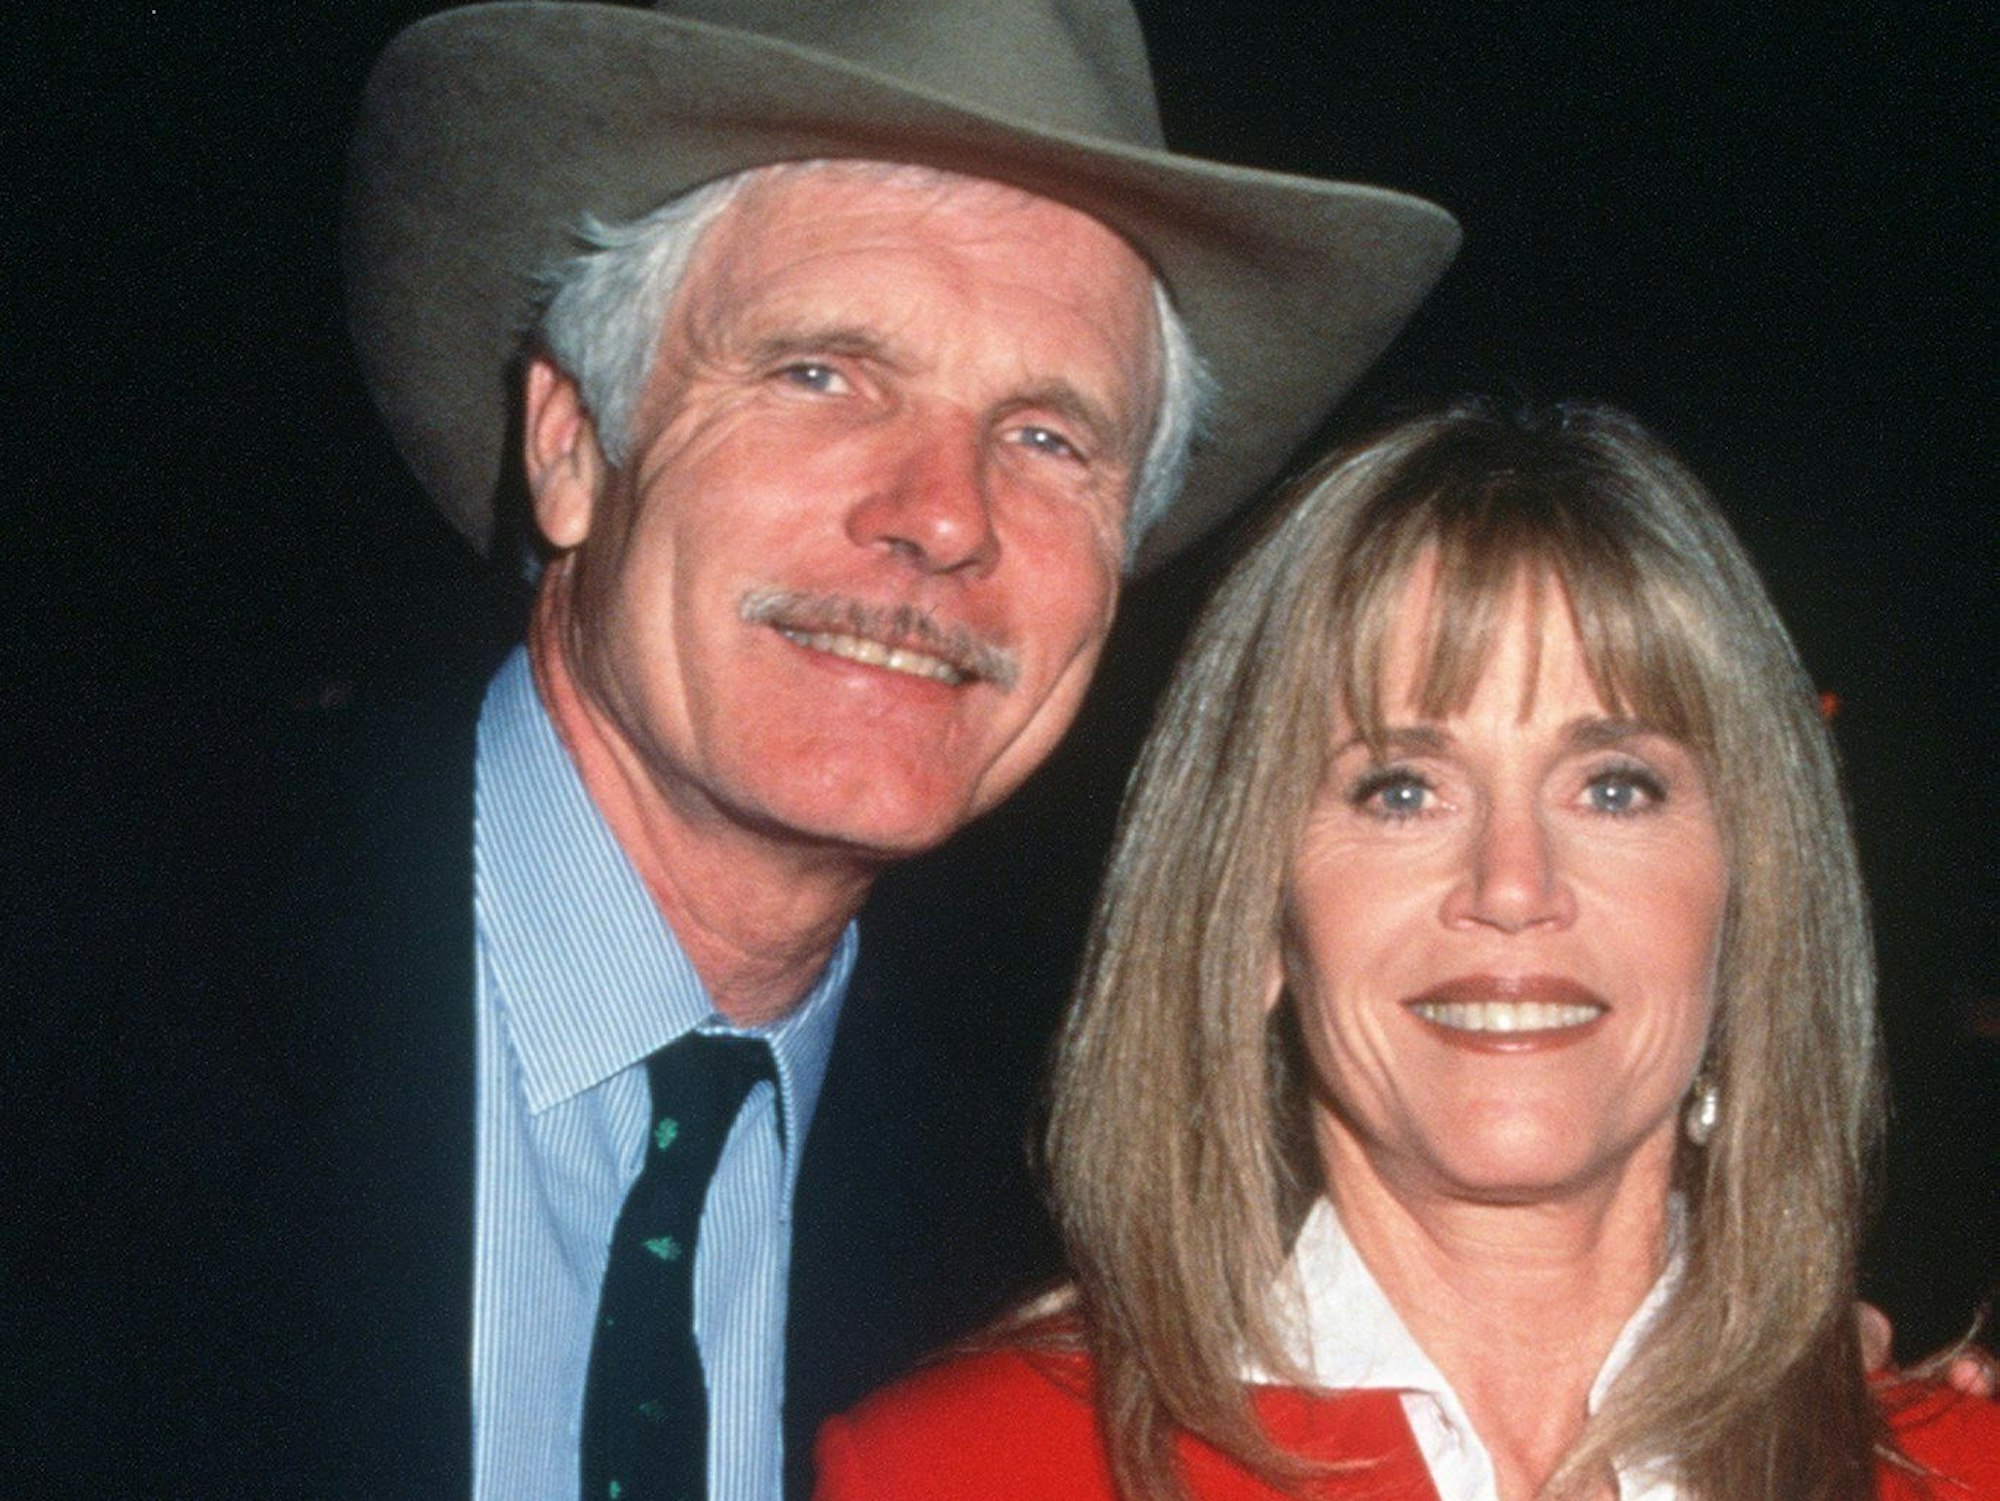 Archivbild vom 22. Mai 1996 zeigt CNN-Gründer Ted Turner mit seiner Ehefrau, der Schauspielerin Jane Fonda.